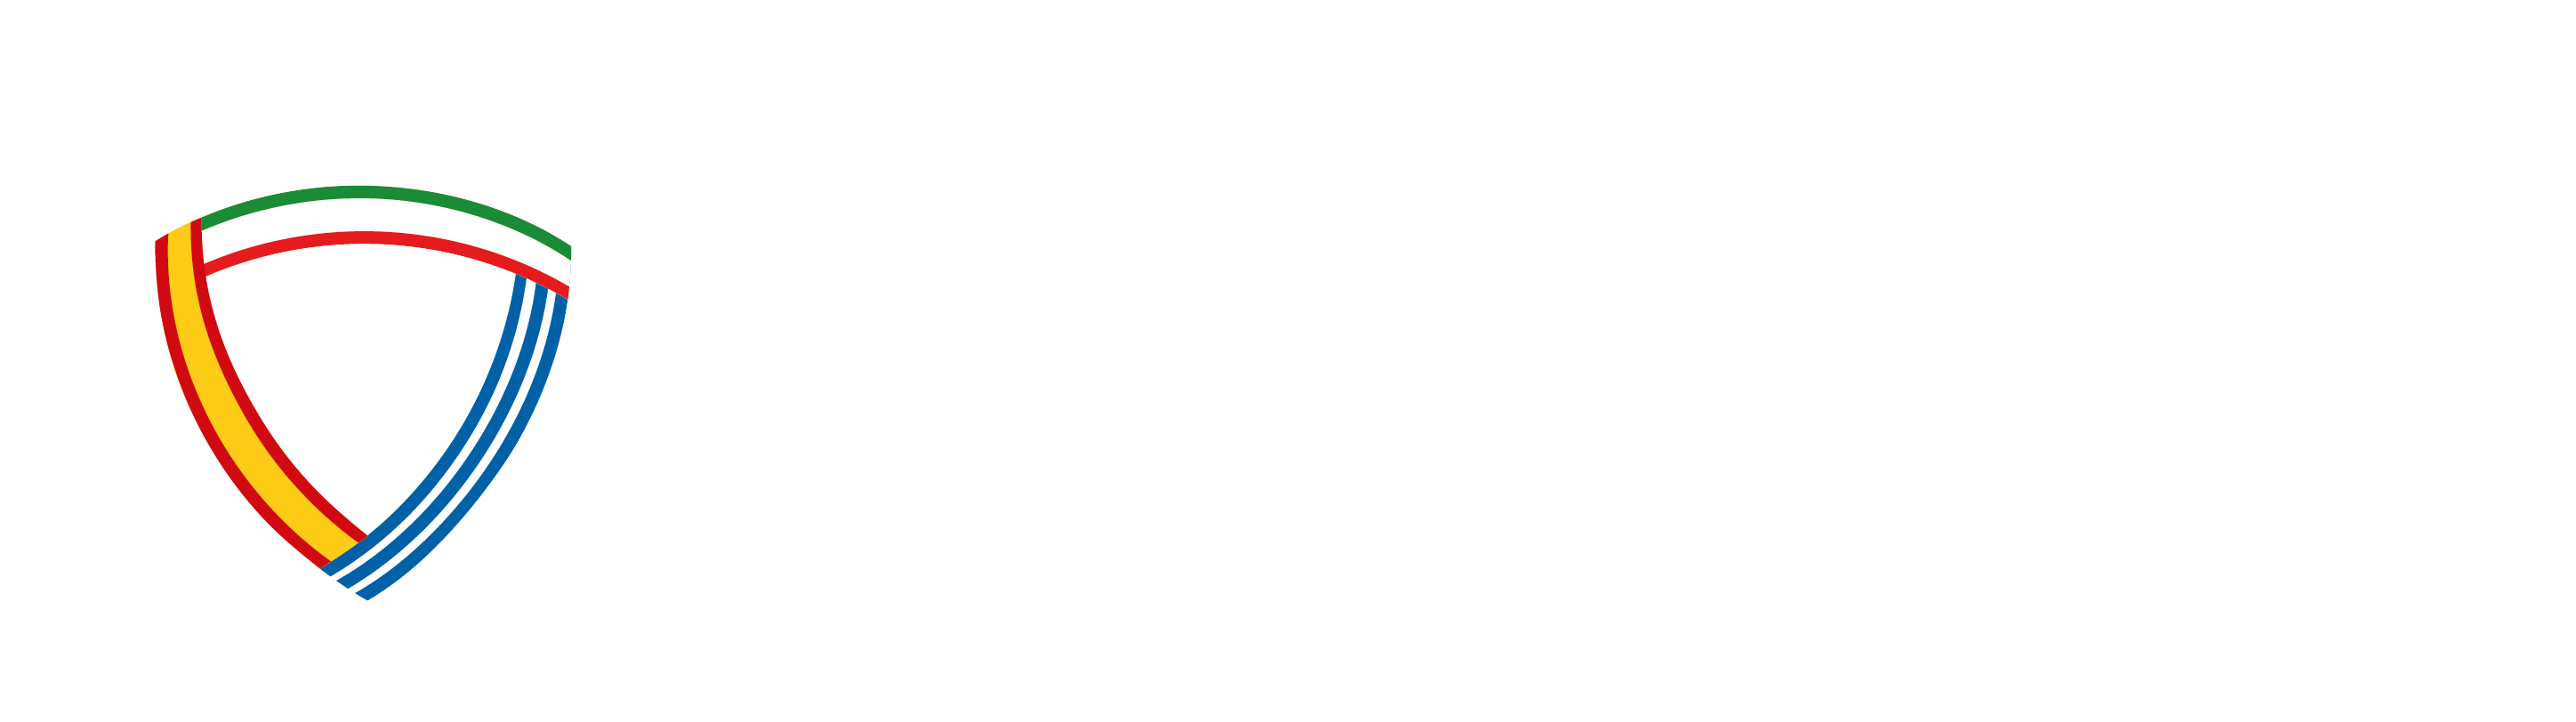 Cyberhimprex